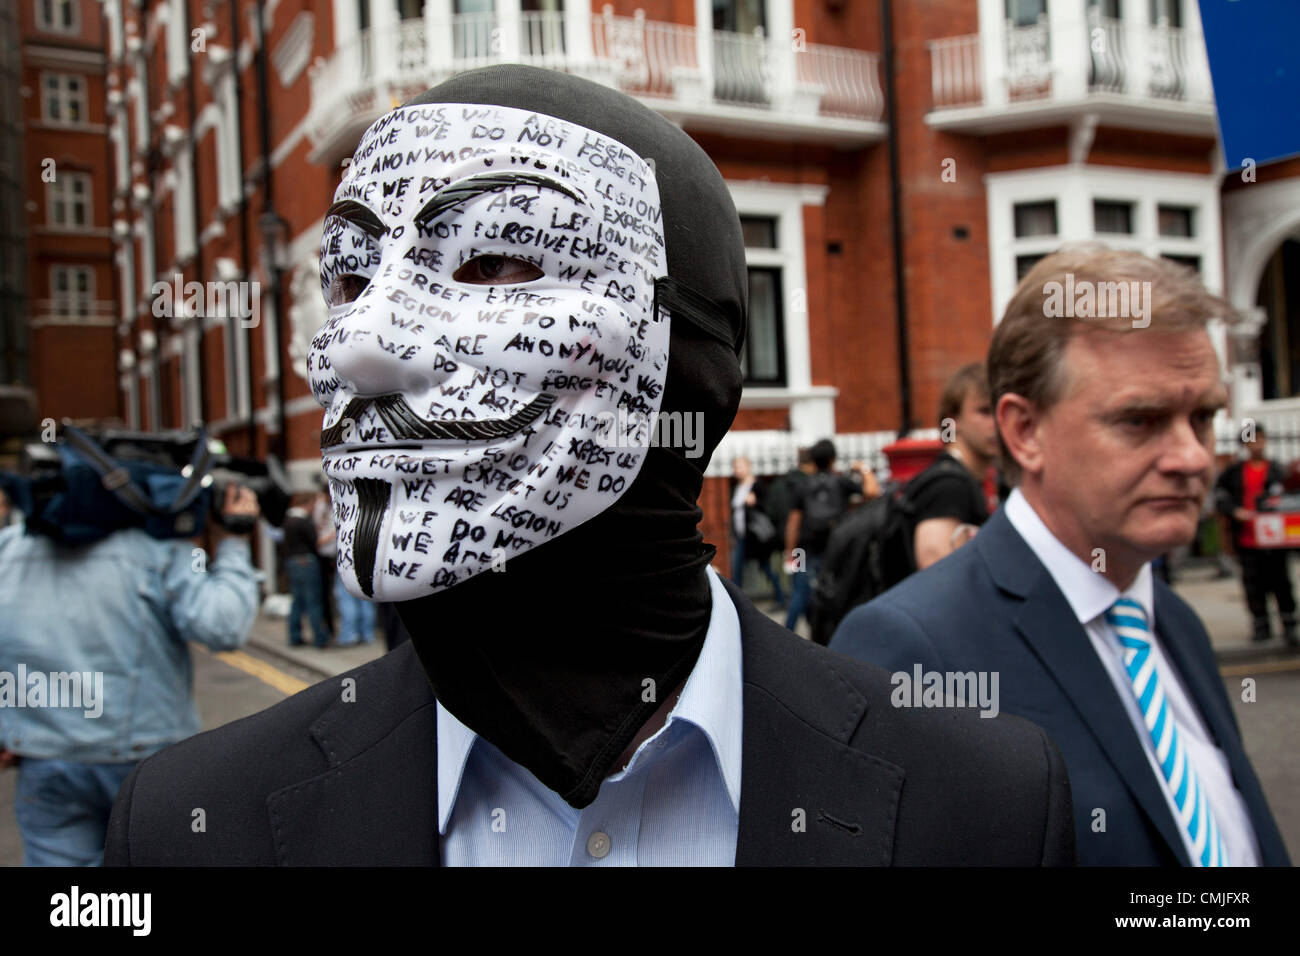 Londres, Royaume-Uni. Jeudi 16 août 2012. Les partisans de Julian Assange de UK anonyme portant des masques à l'extérieur de l'ambassade de l'Équateur. Les manifestants étaient pacifiques et tenaient des pancartes disant 'Je suis Julian'. Banque D'Images